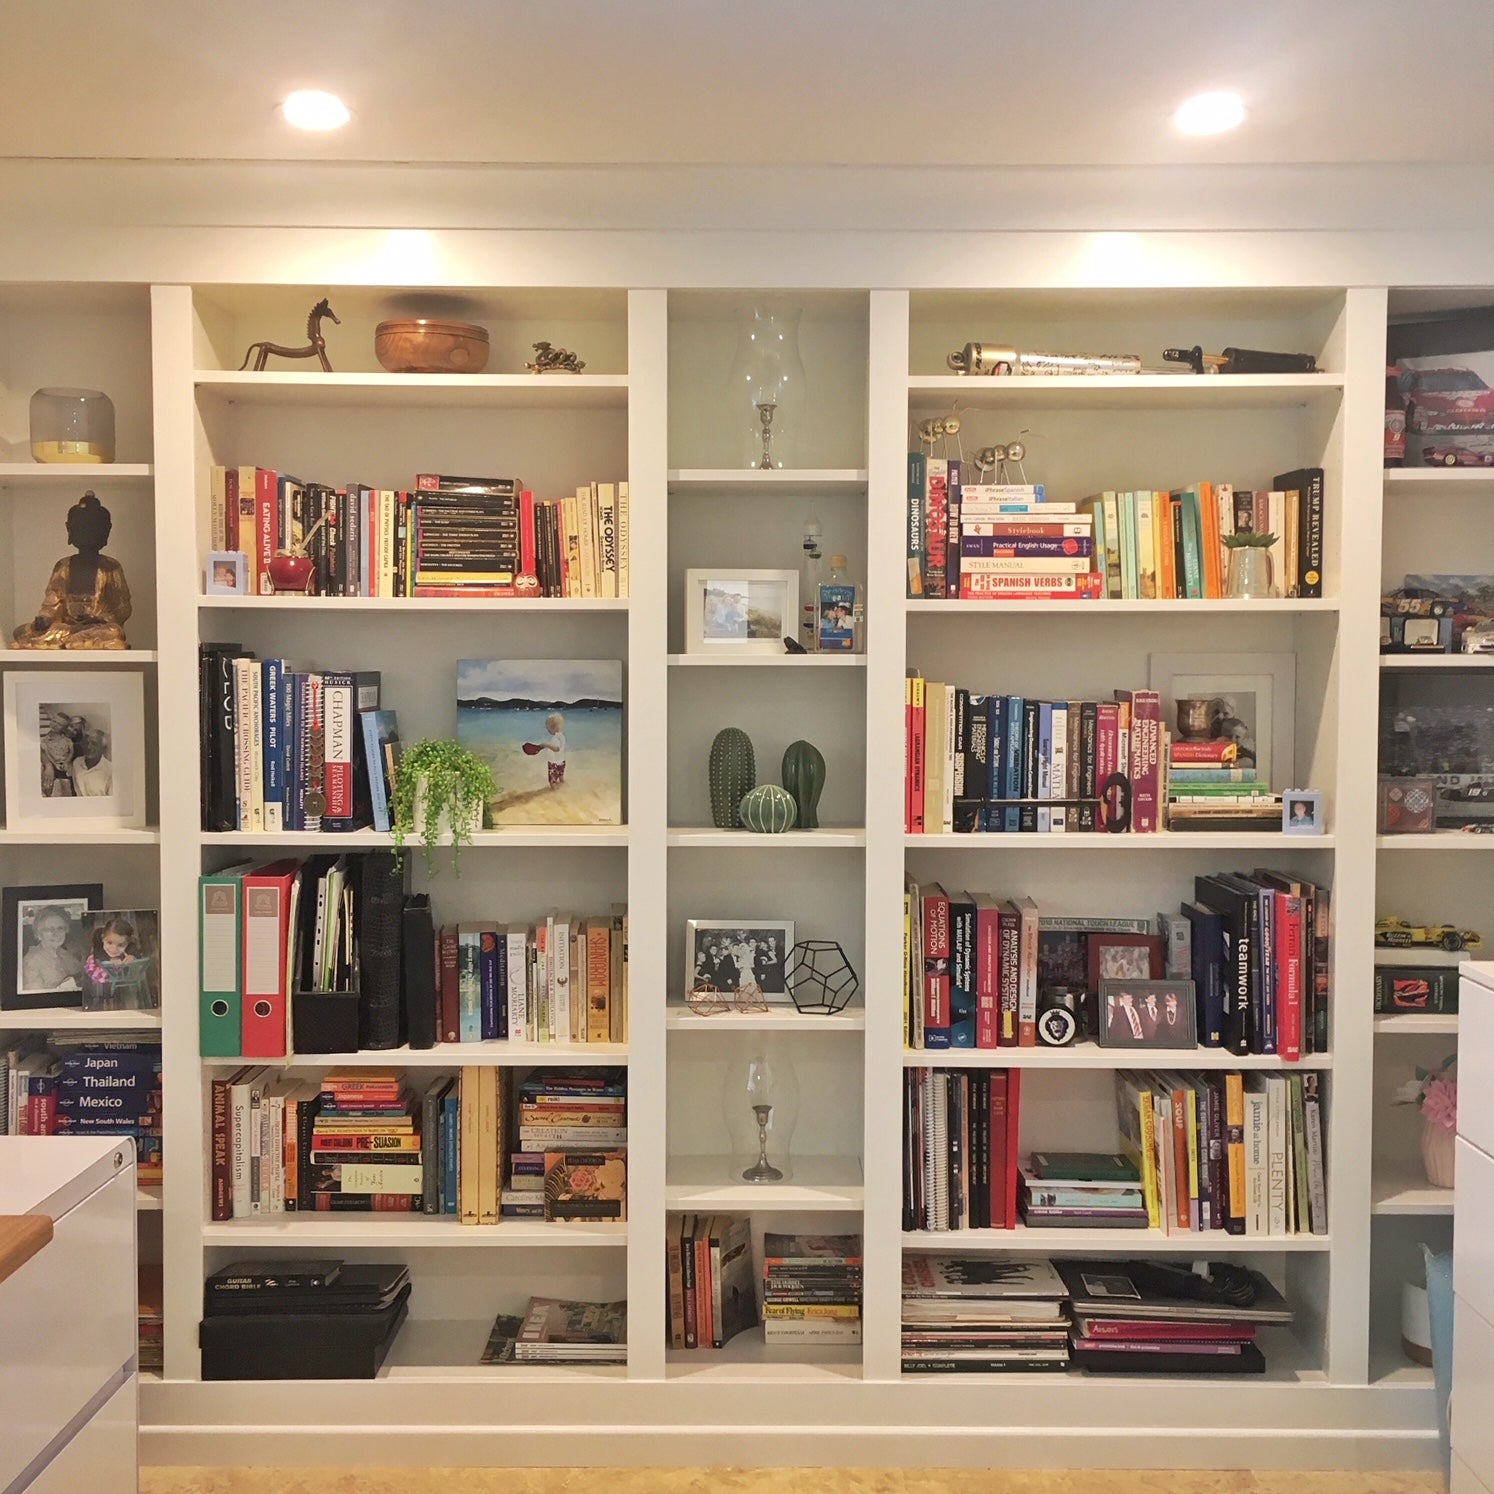 Karu spoelen identificatie DIY Project: Built-in IKEA BILLY Bookcase – Lux Hax